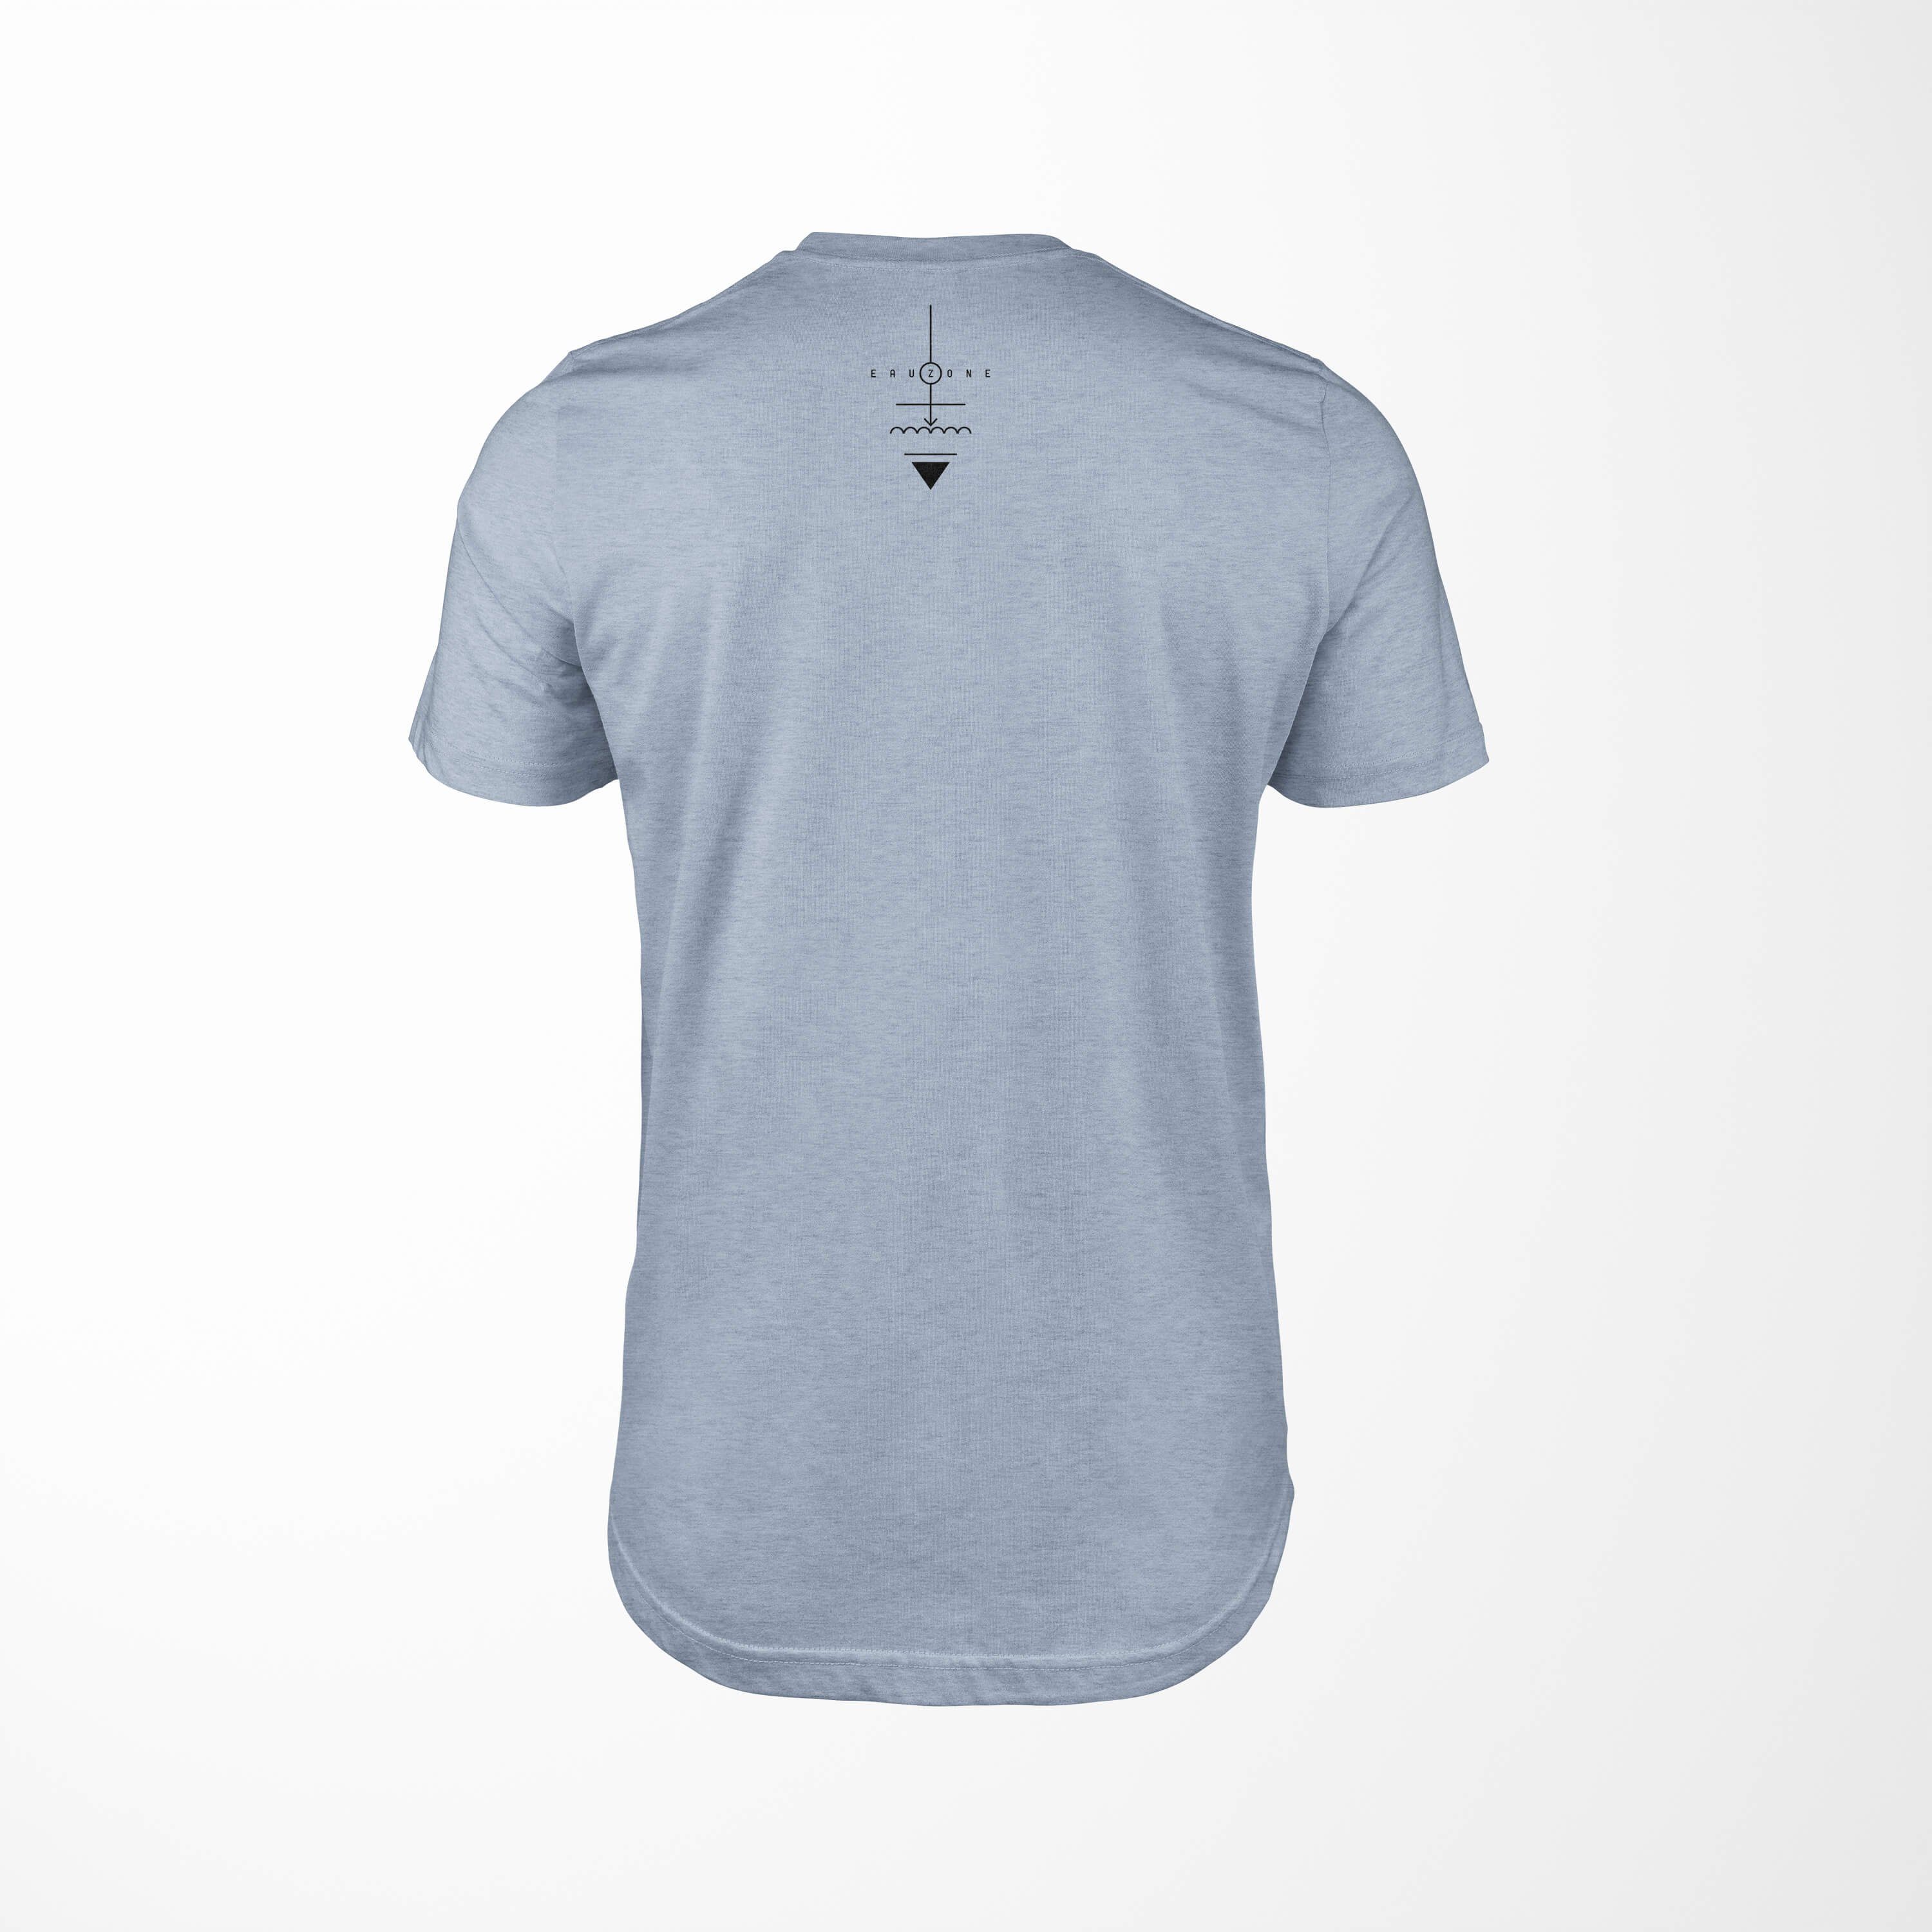 Struktur Serie T-Shirt Tragekomfort T-Shirt Premium No.0067 Stonewash Sinus Symbole Art Denim angenehmer Alchemy feine